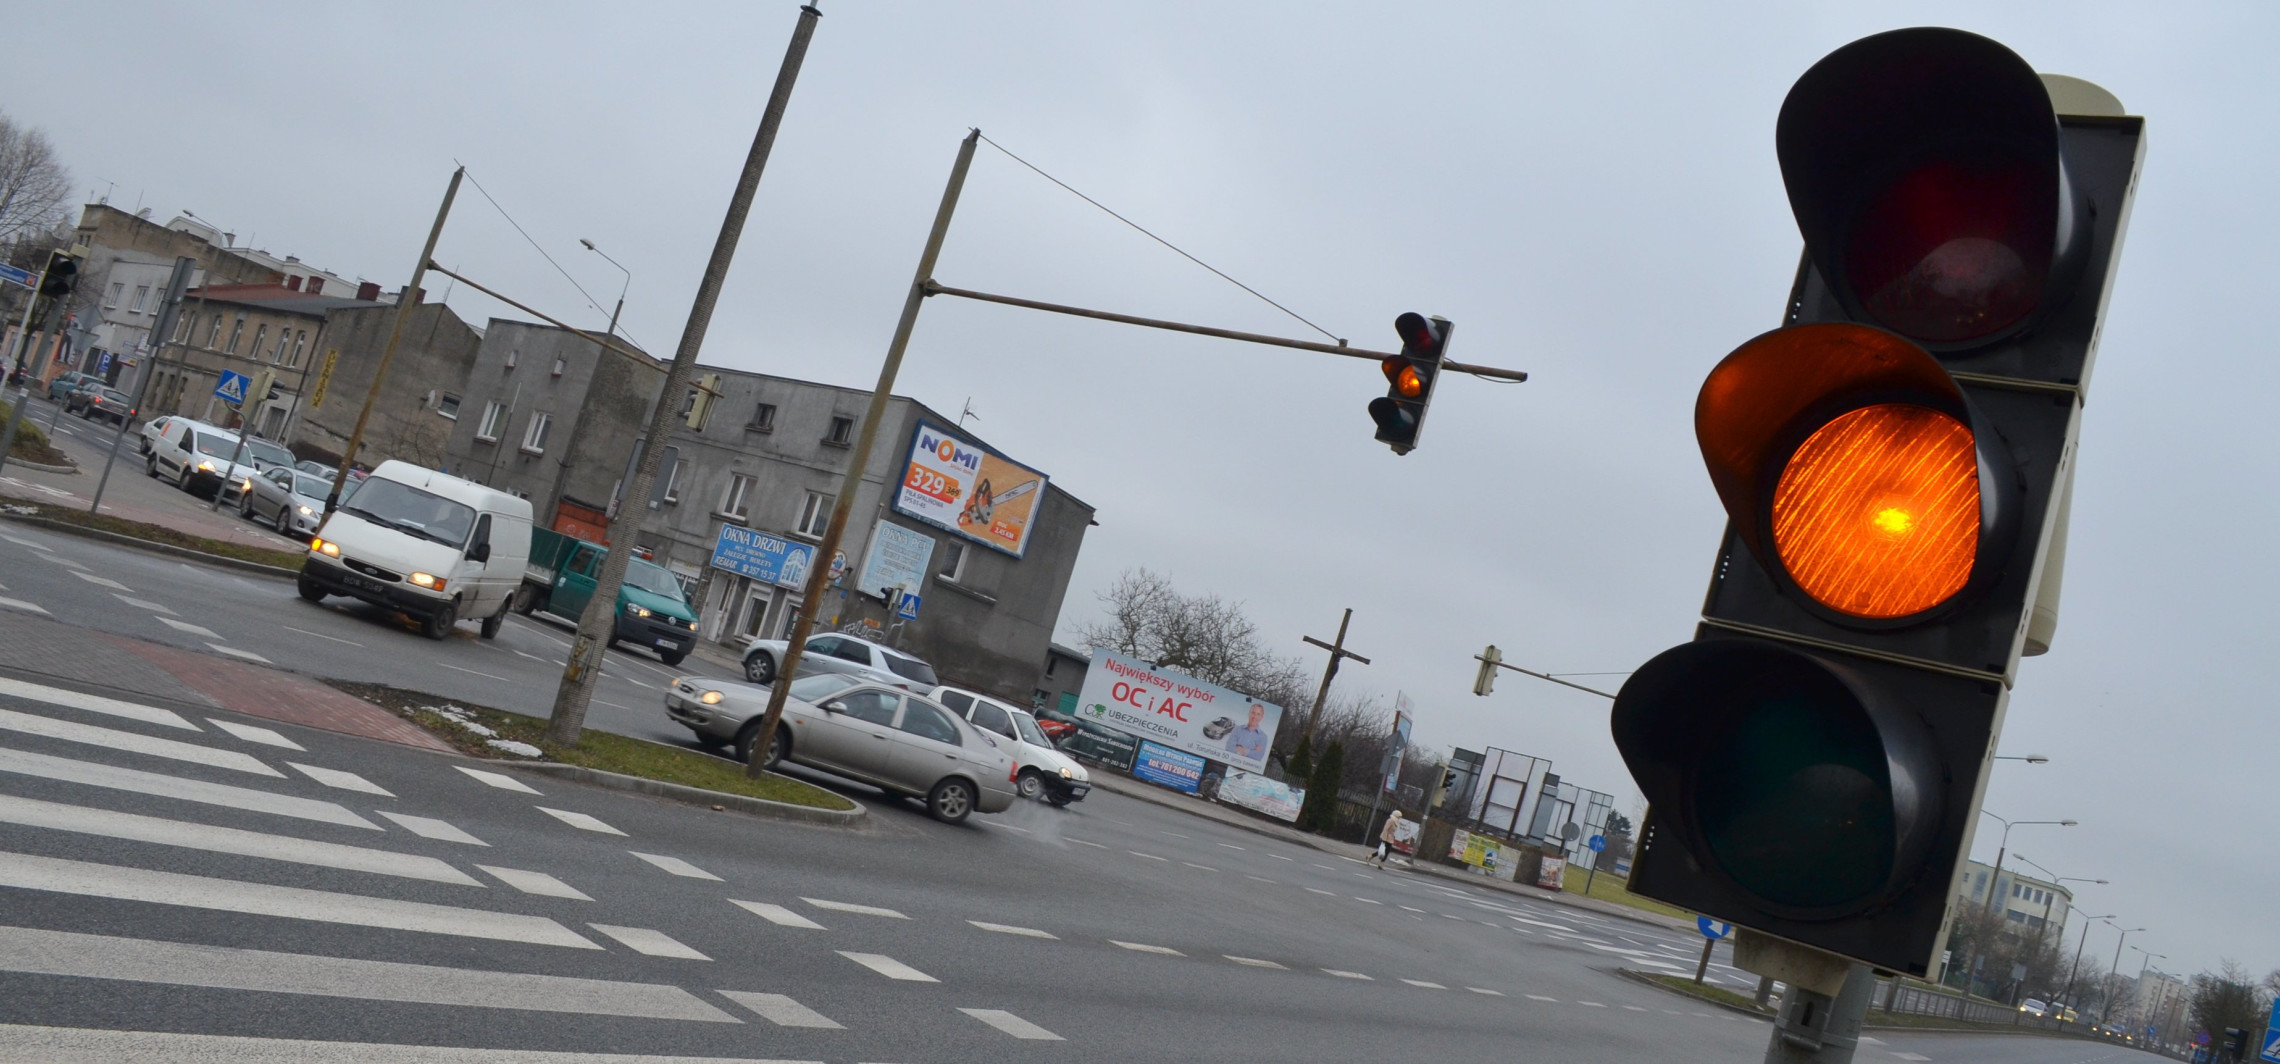 Inowrocław - Będą ważne zmiany na ruchliwym skrzyżowaniu